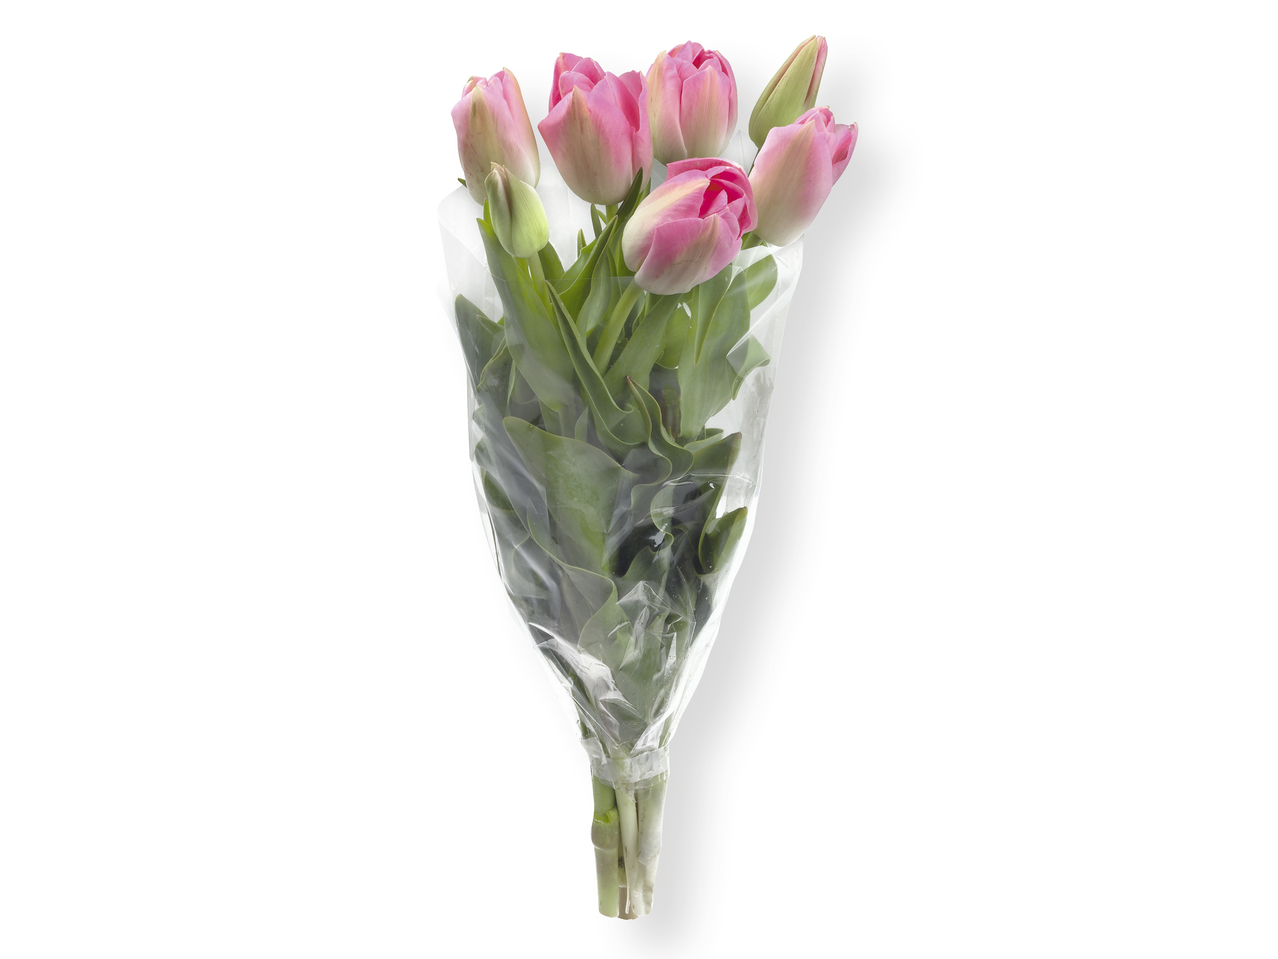 Ramo de tulipanes - Lidl — España - Specials archive